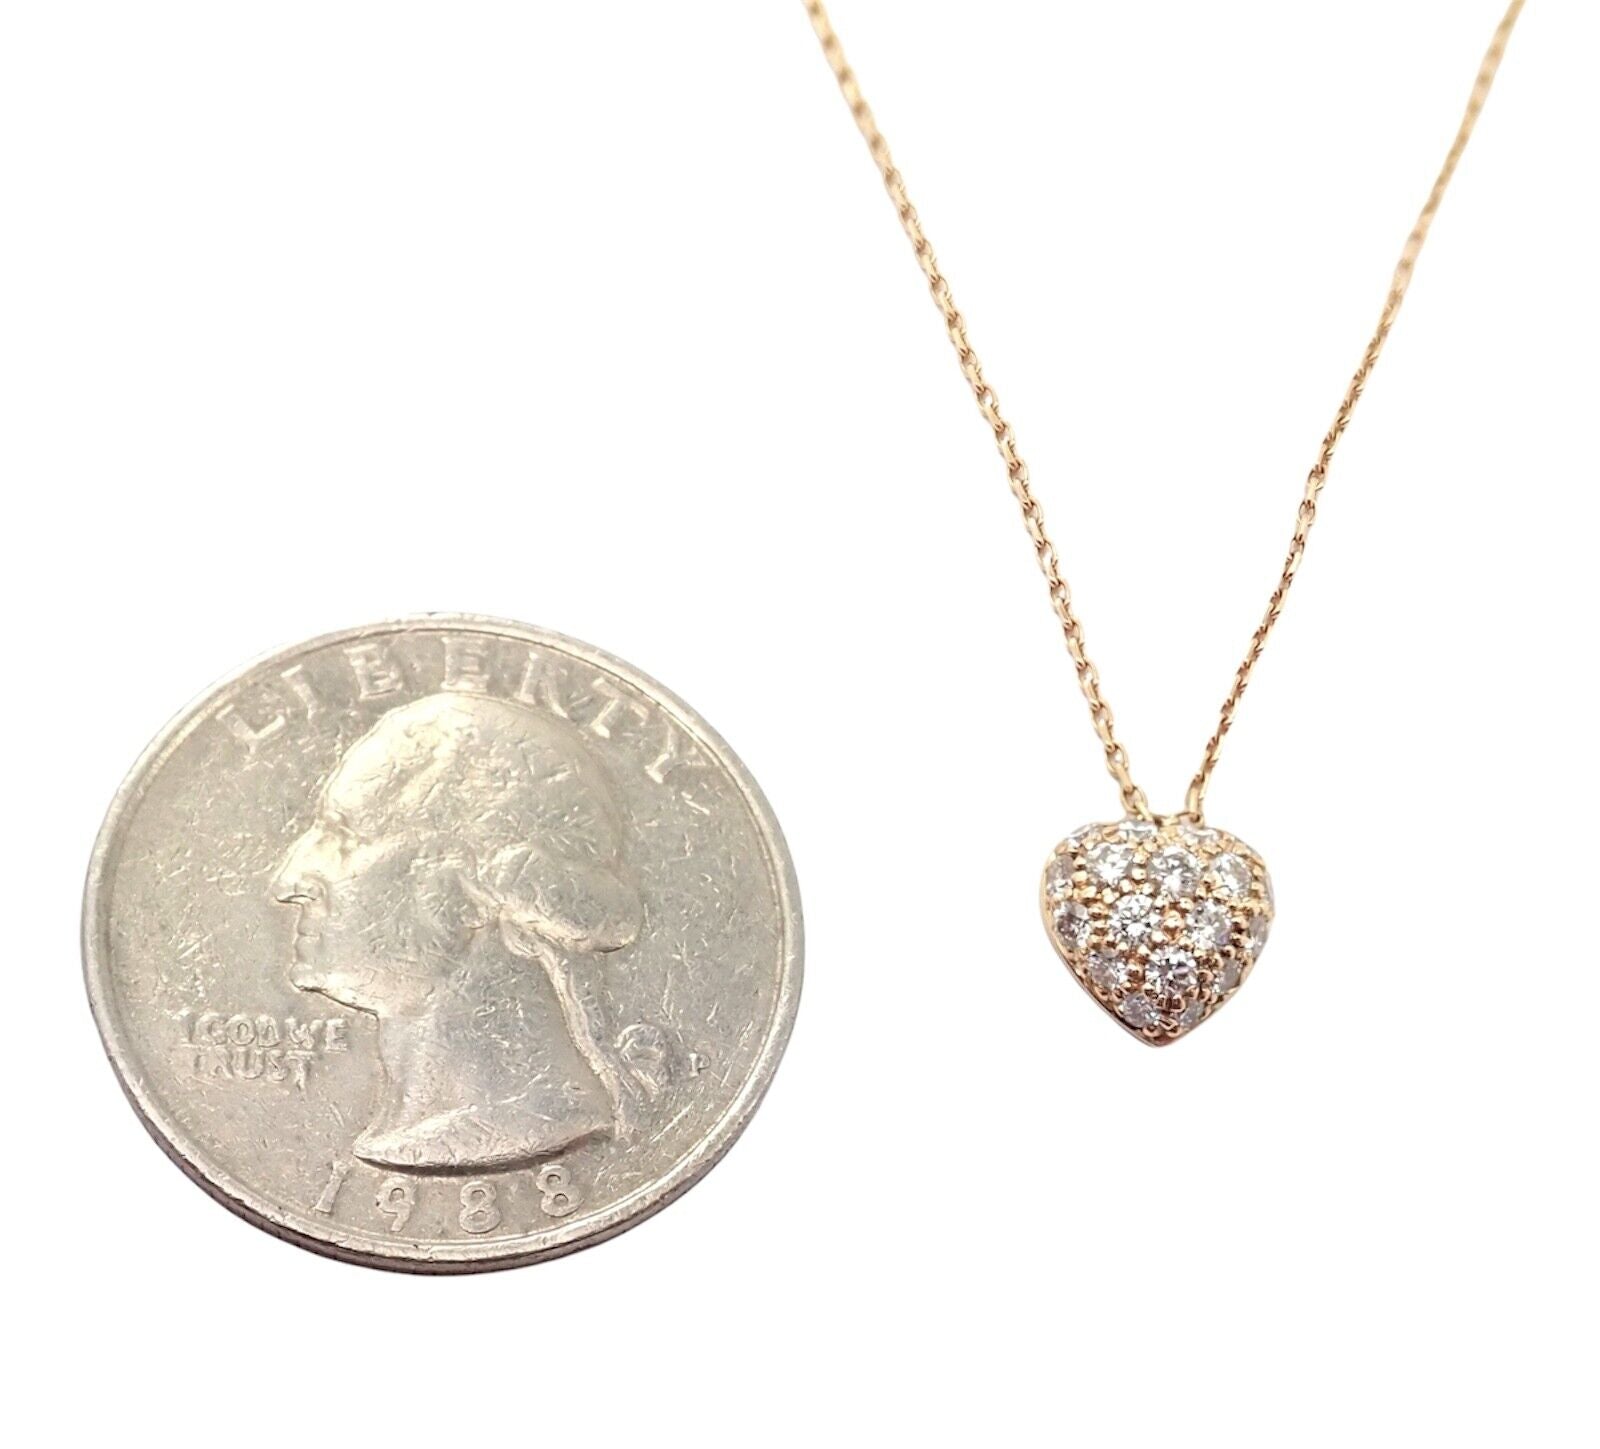 Louis Vuitton Pave Diamond Necklace Pendant 18K Rose Gold 0.05 Cttw